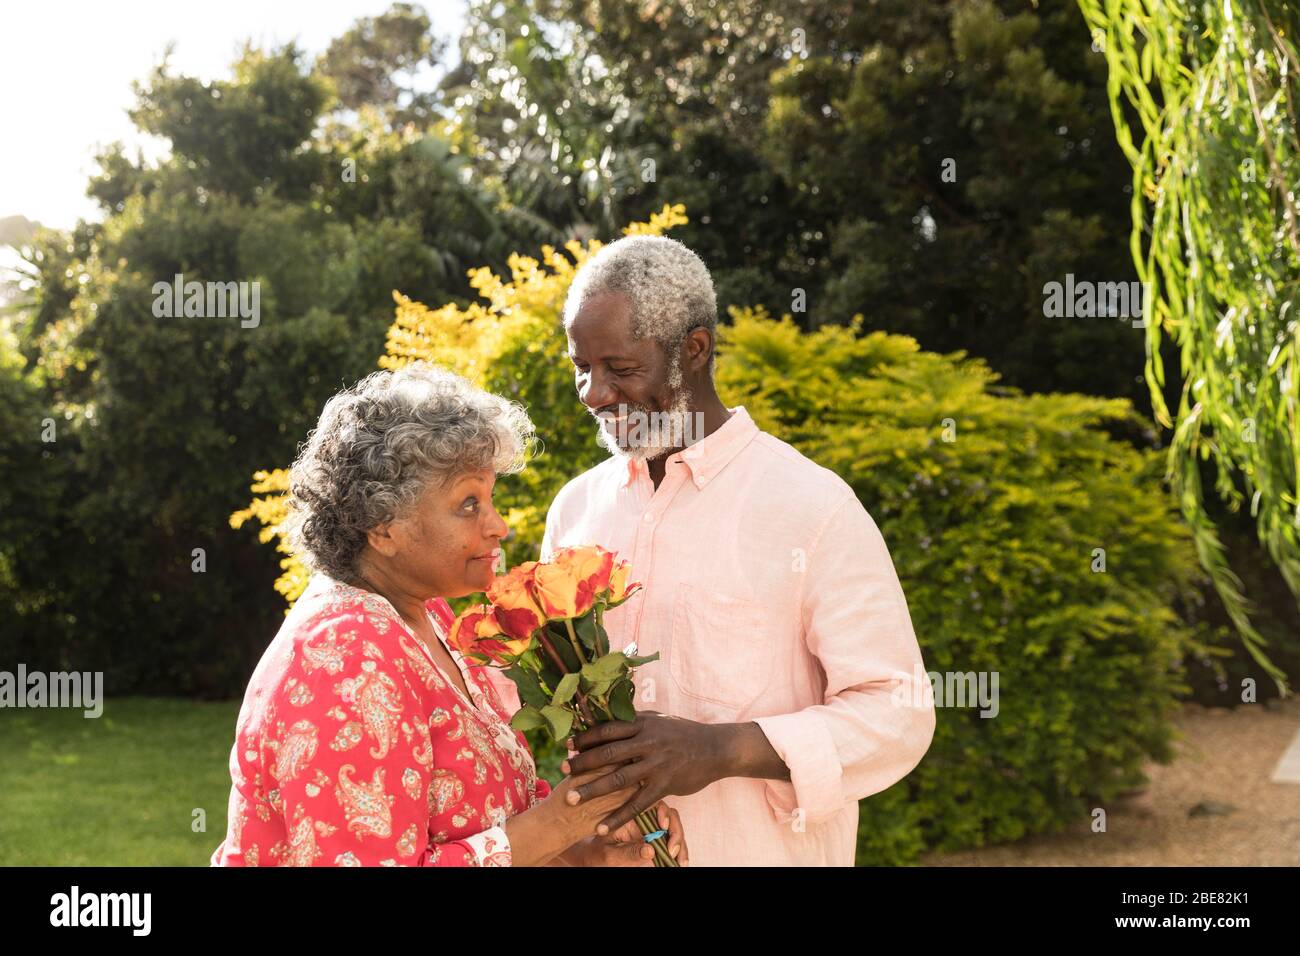 Un uomo afro-americano che offre fiori alla moglie, trascorrendo insieme del tempo in giardino Foto Stock